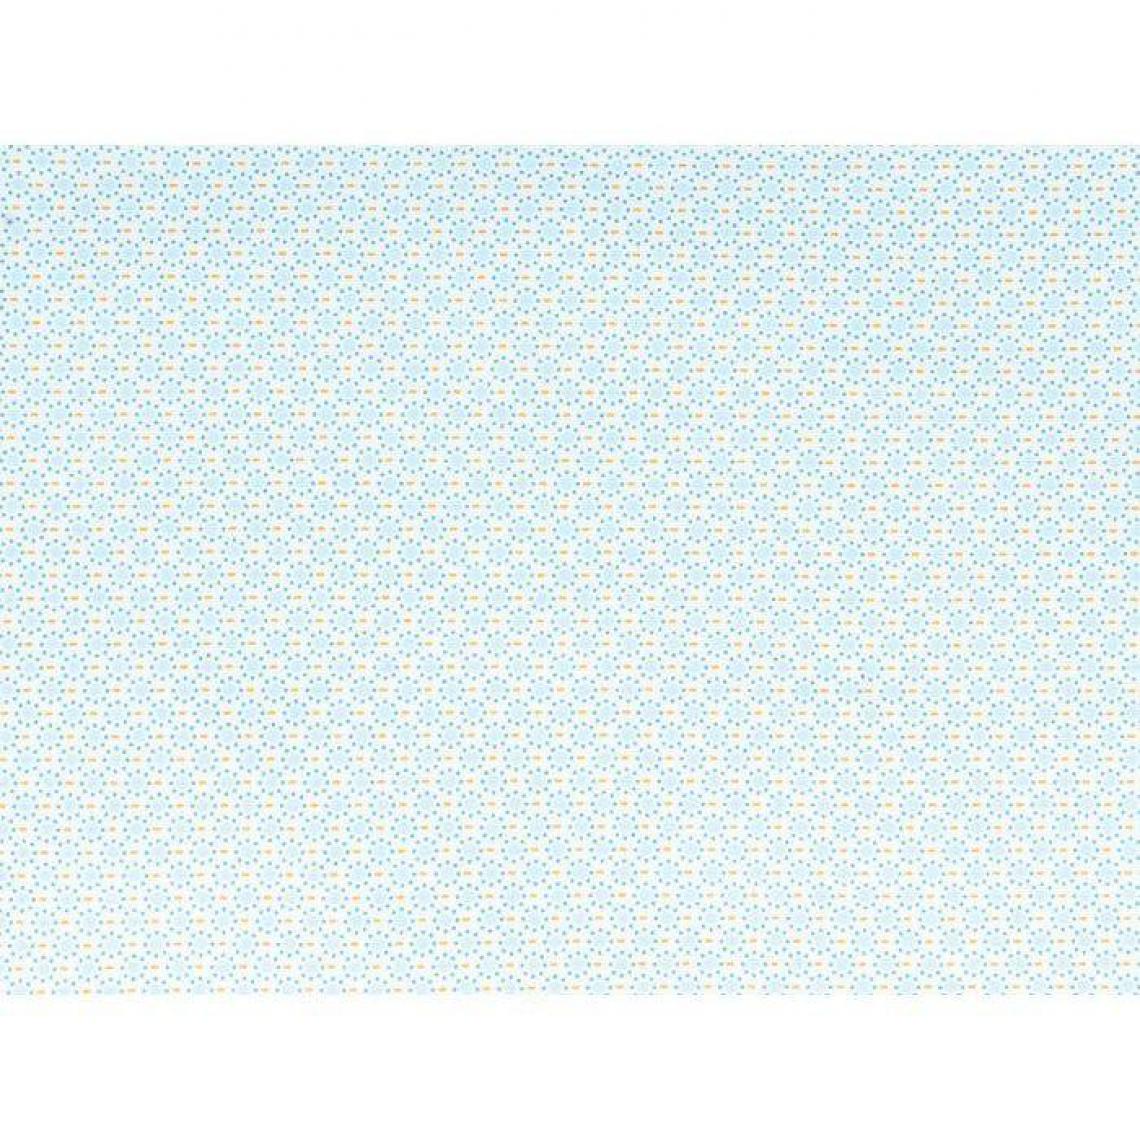 Artemio - Coupon de tissu 55 x 45 cm - Ronds bleu clair à pointillés bleus - Dessin et peinture